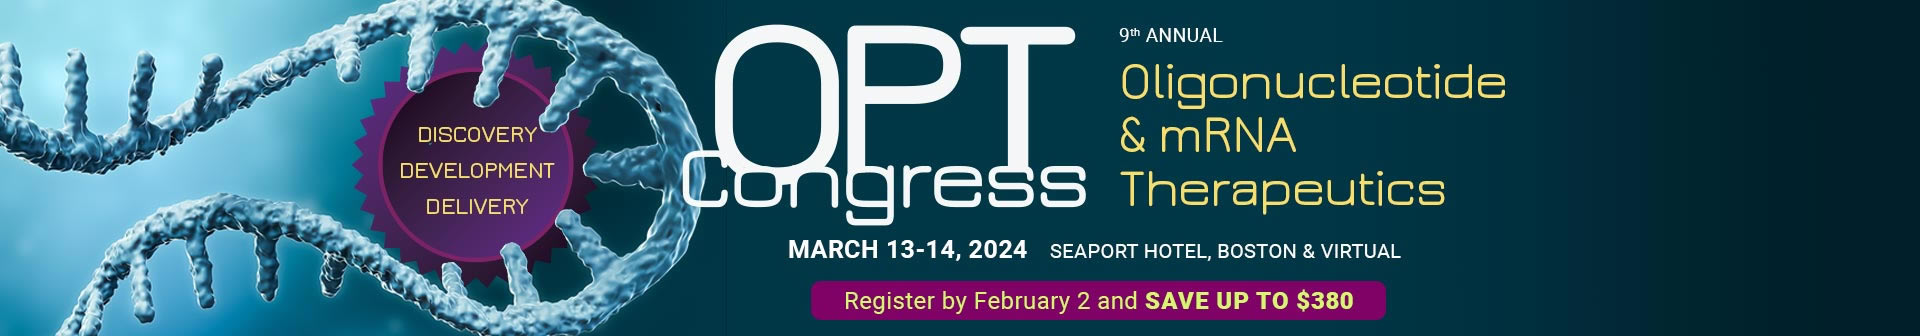 OPT Congress